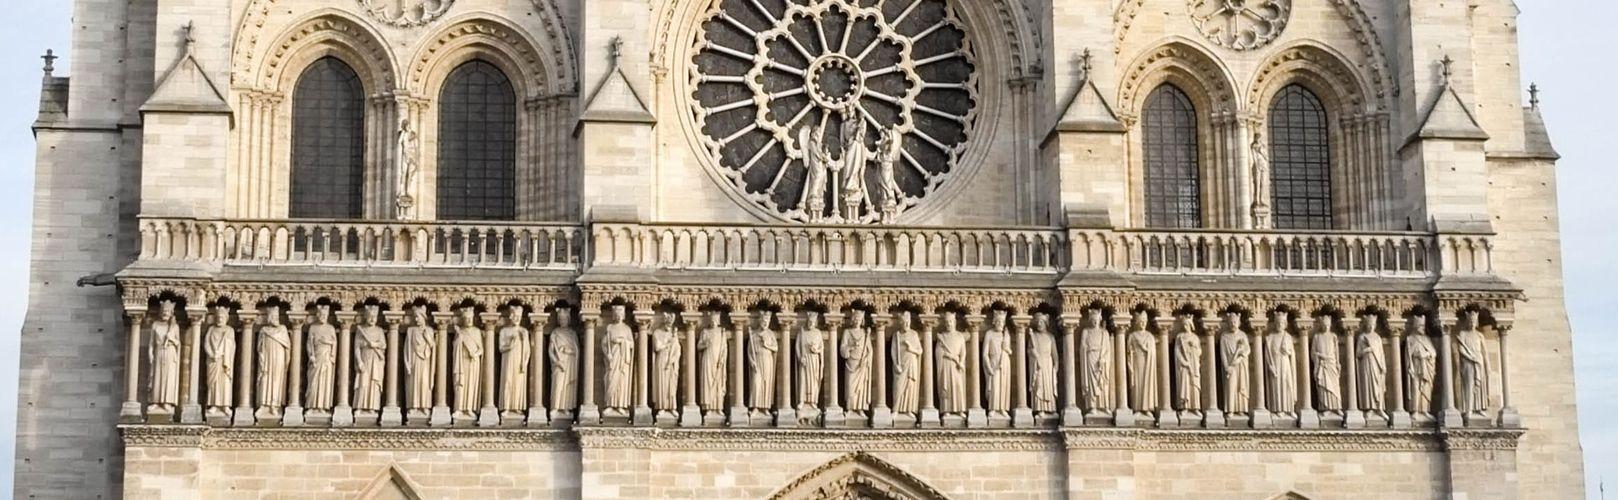 Galerie des Rois de la cathédrale Notre-Dame de Paris